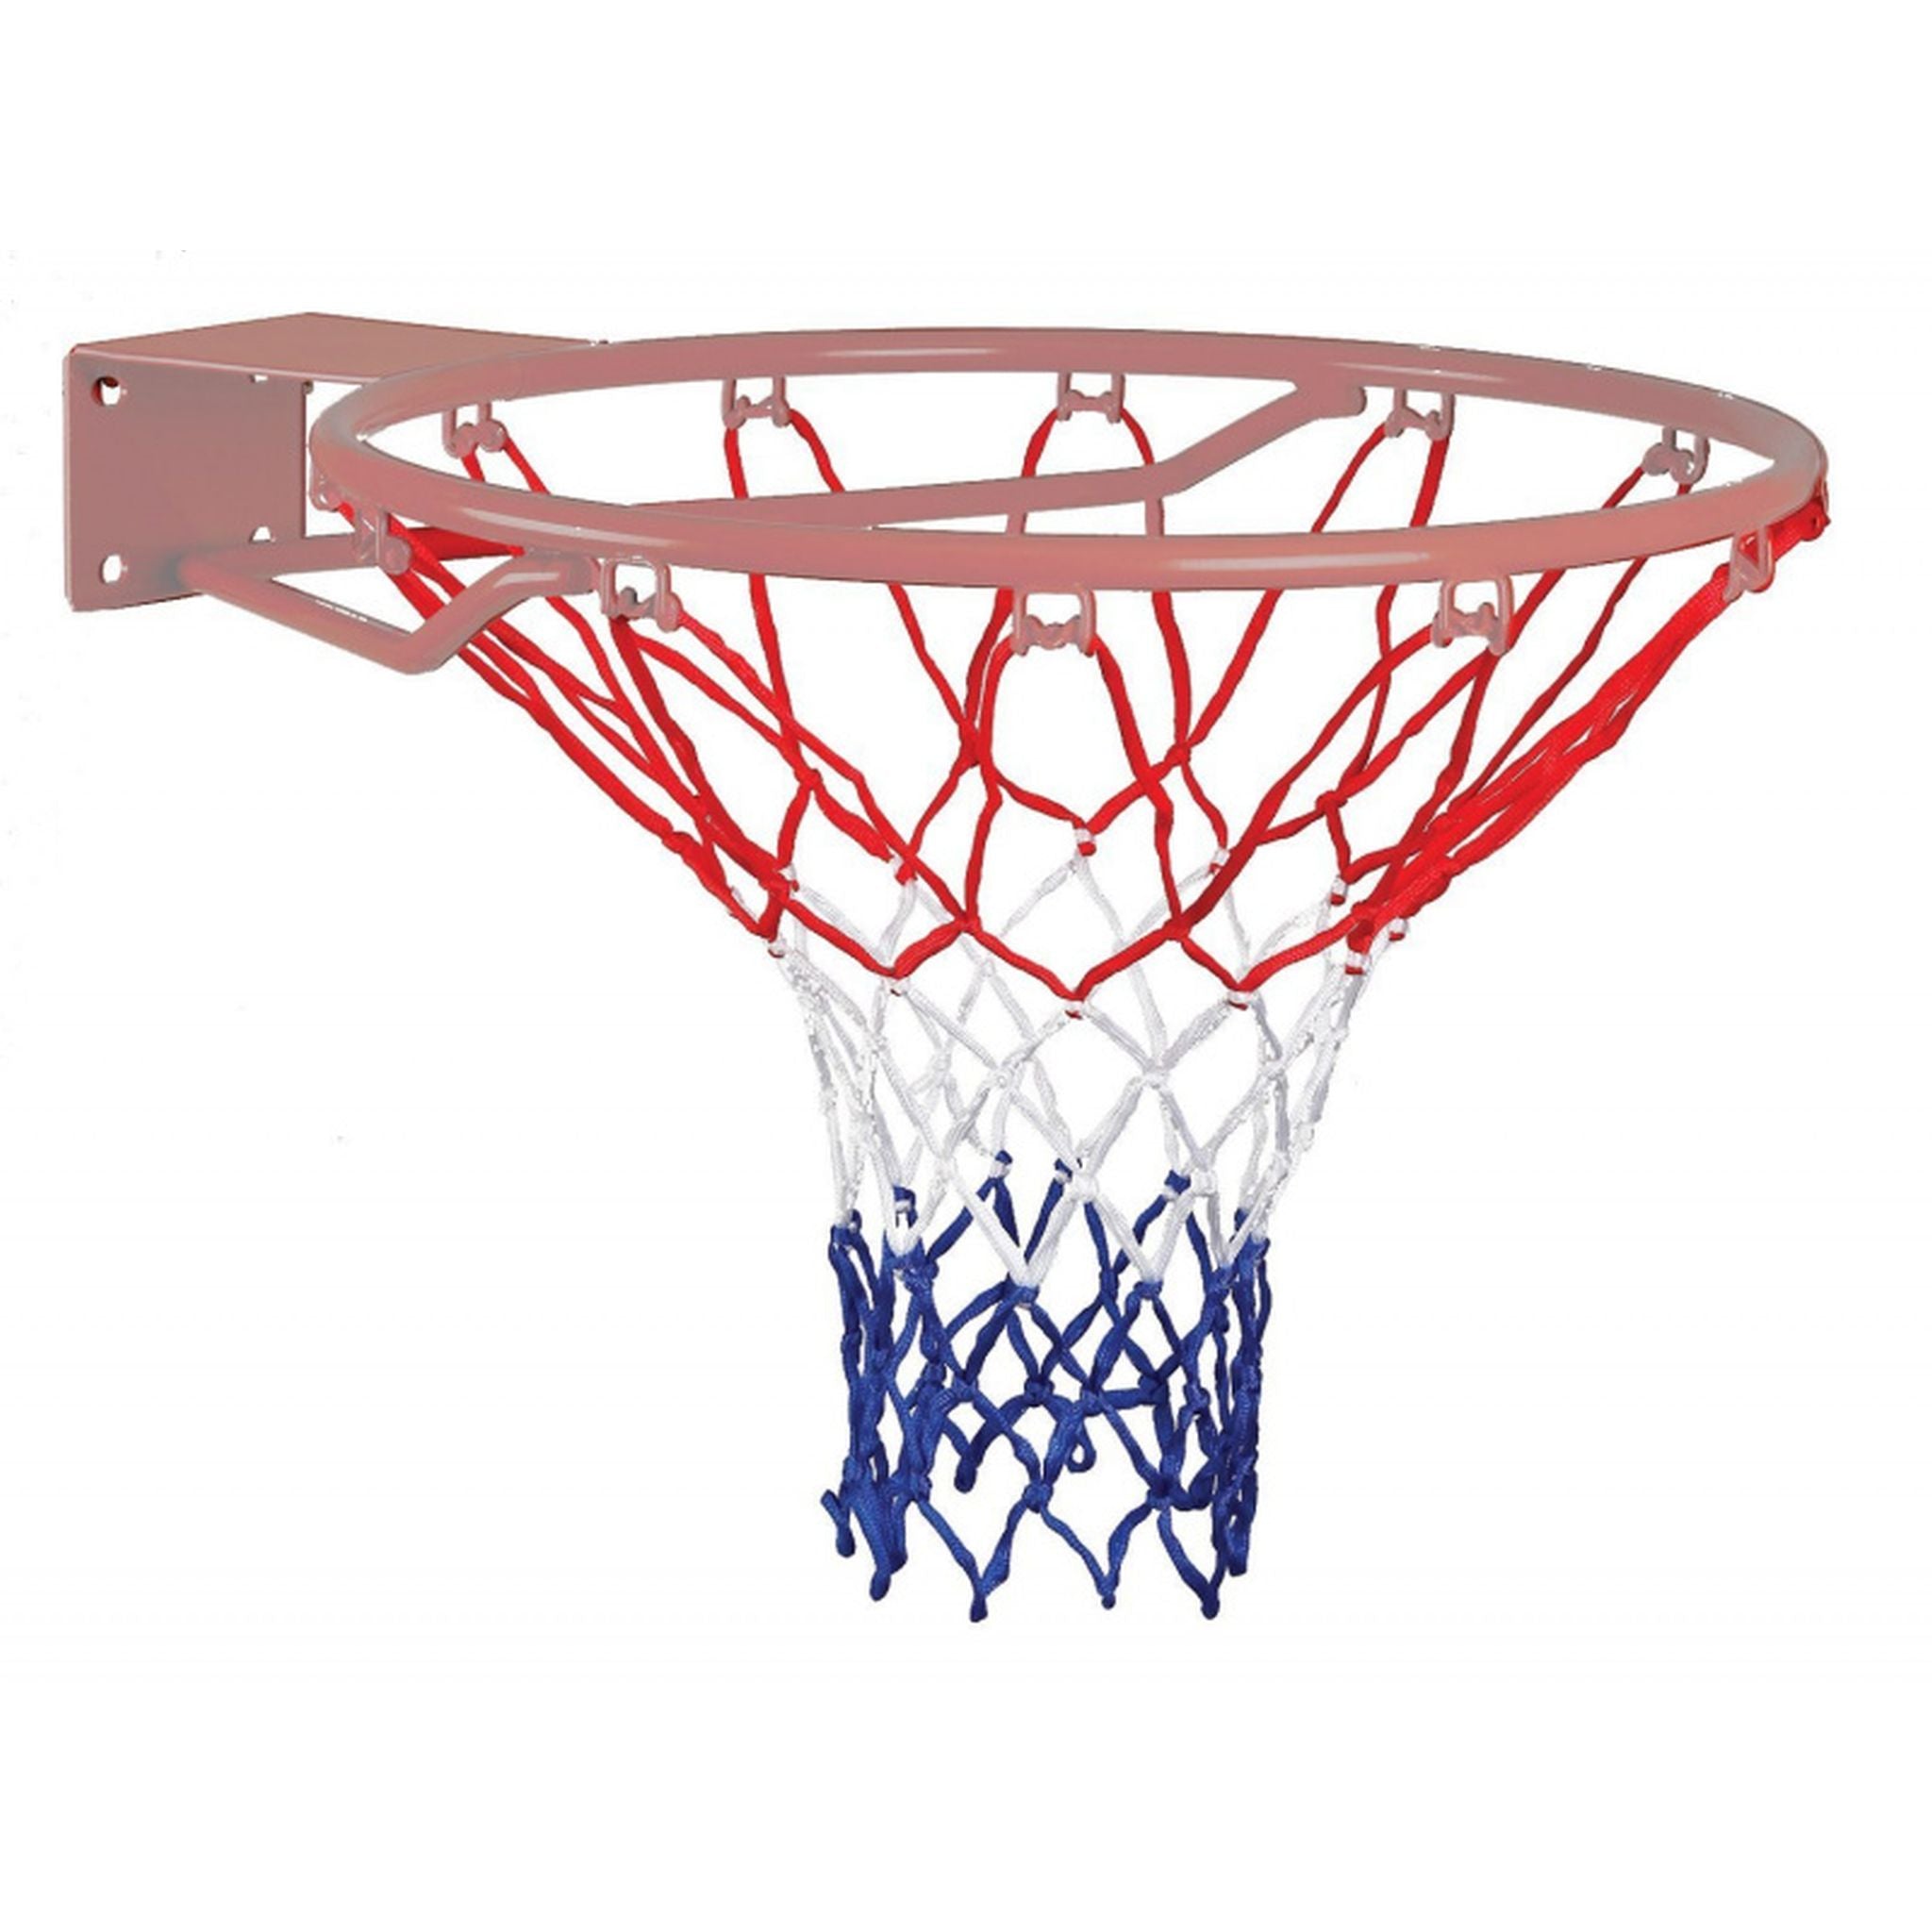 Regent Standard Basketball Net